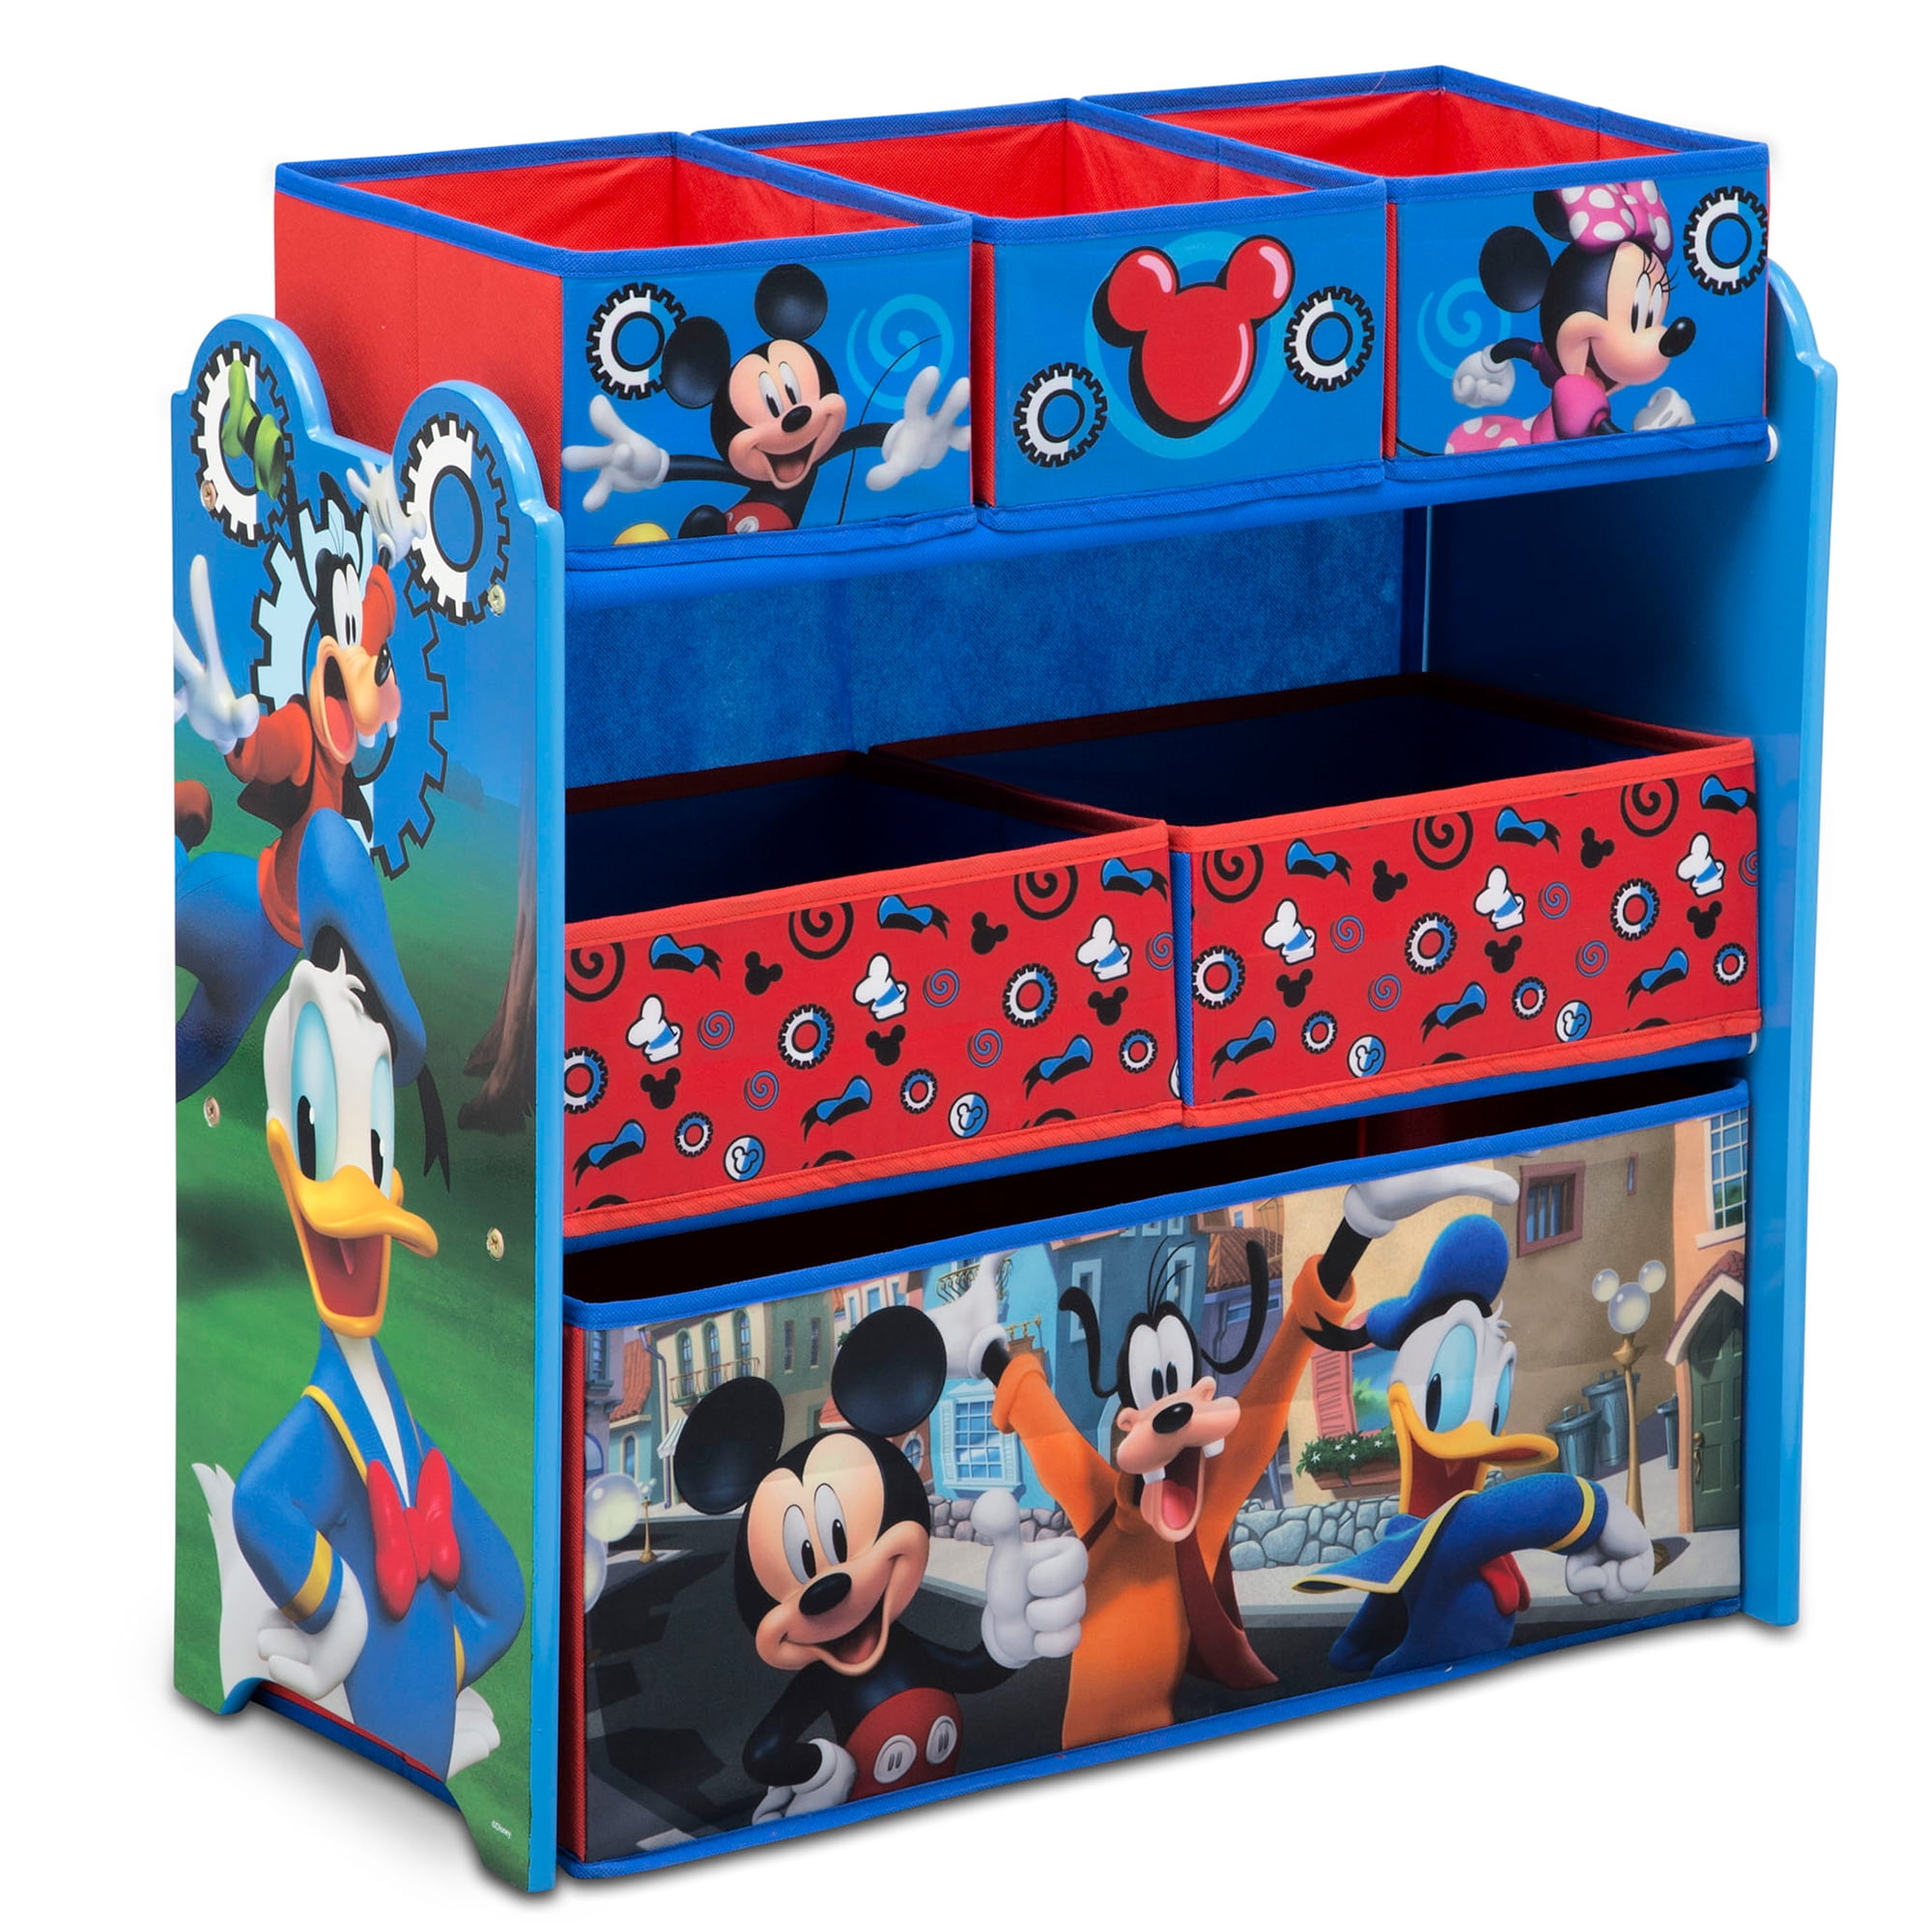 6-Bin Toy Storage Organizer Disney Mickey Mouse 